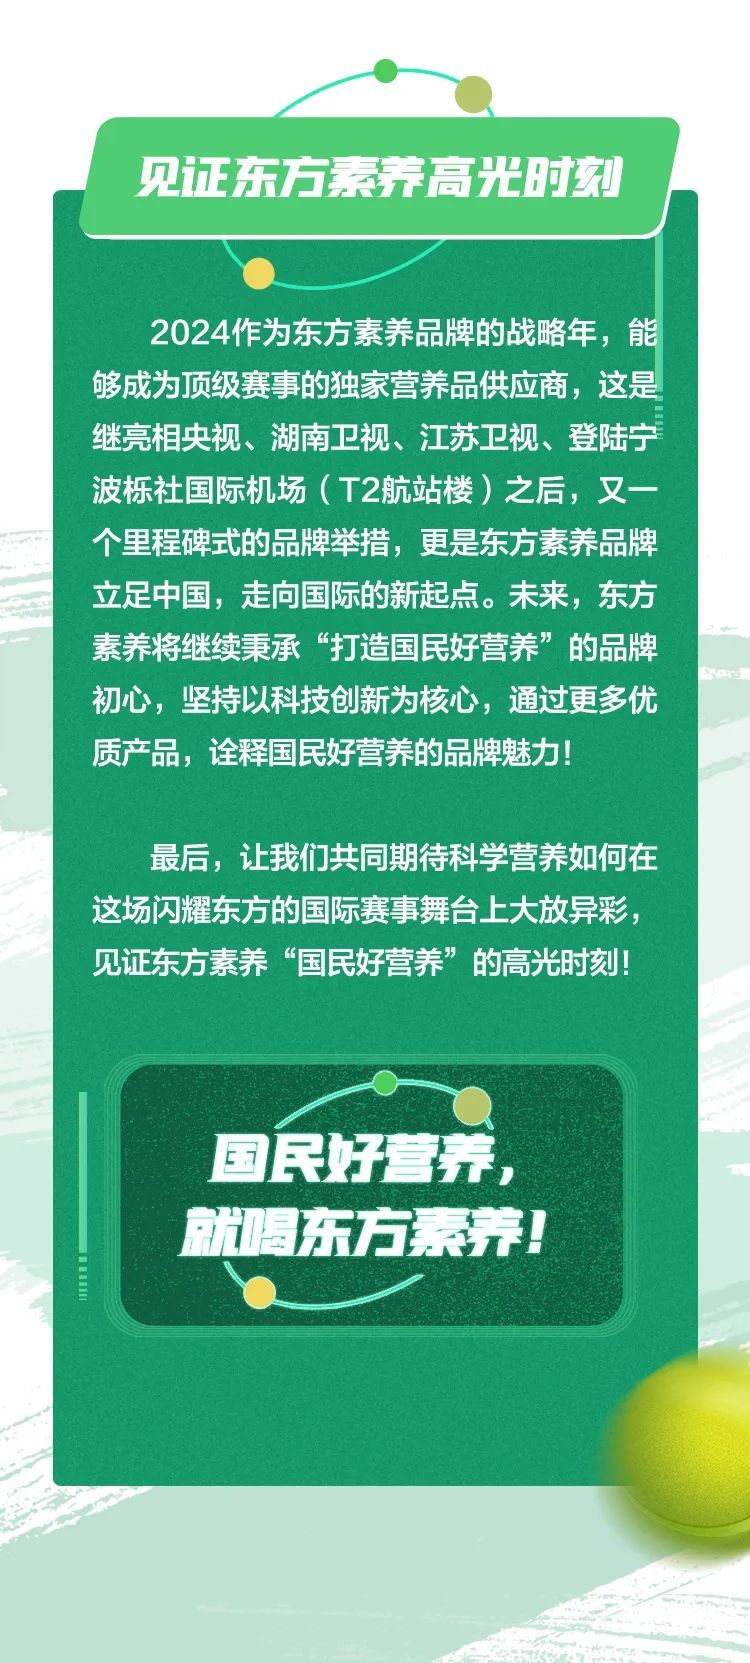 三生 | 东方素养荣膺2024中国网球公开赛独家营养品供应商